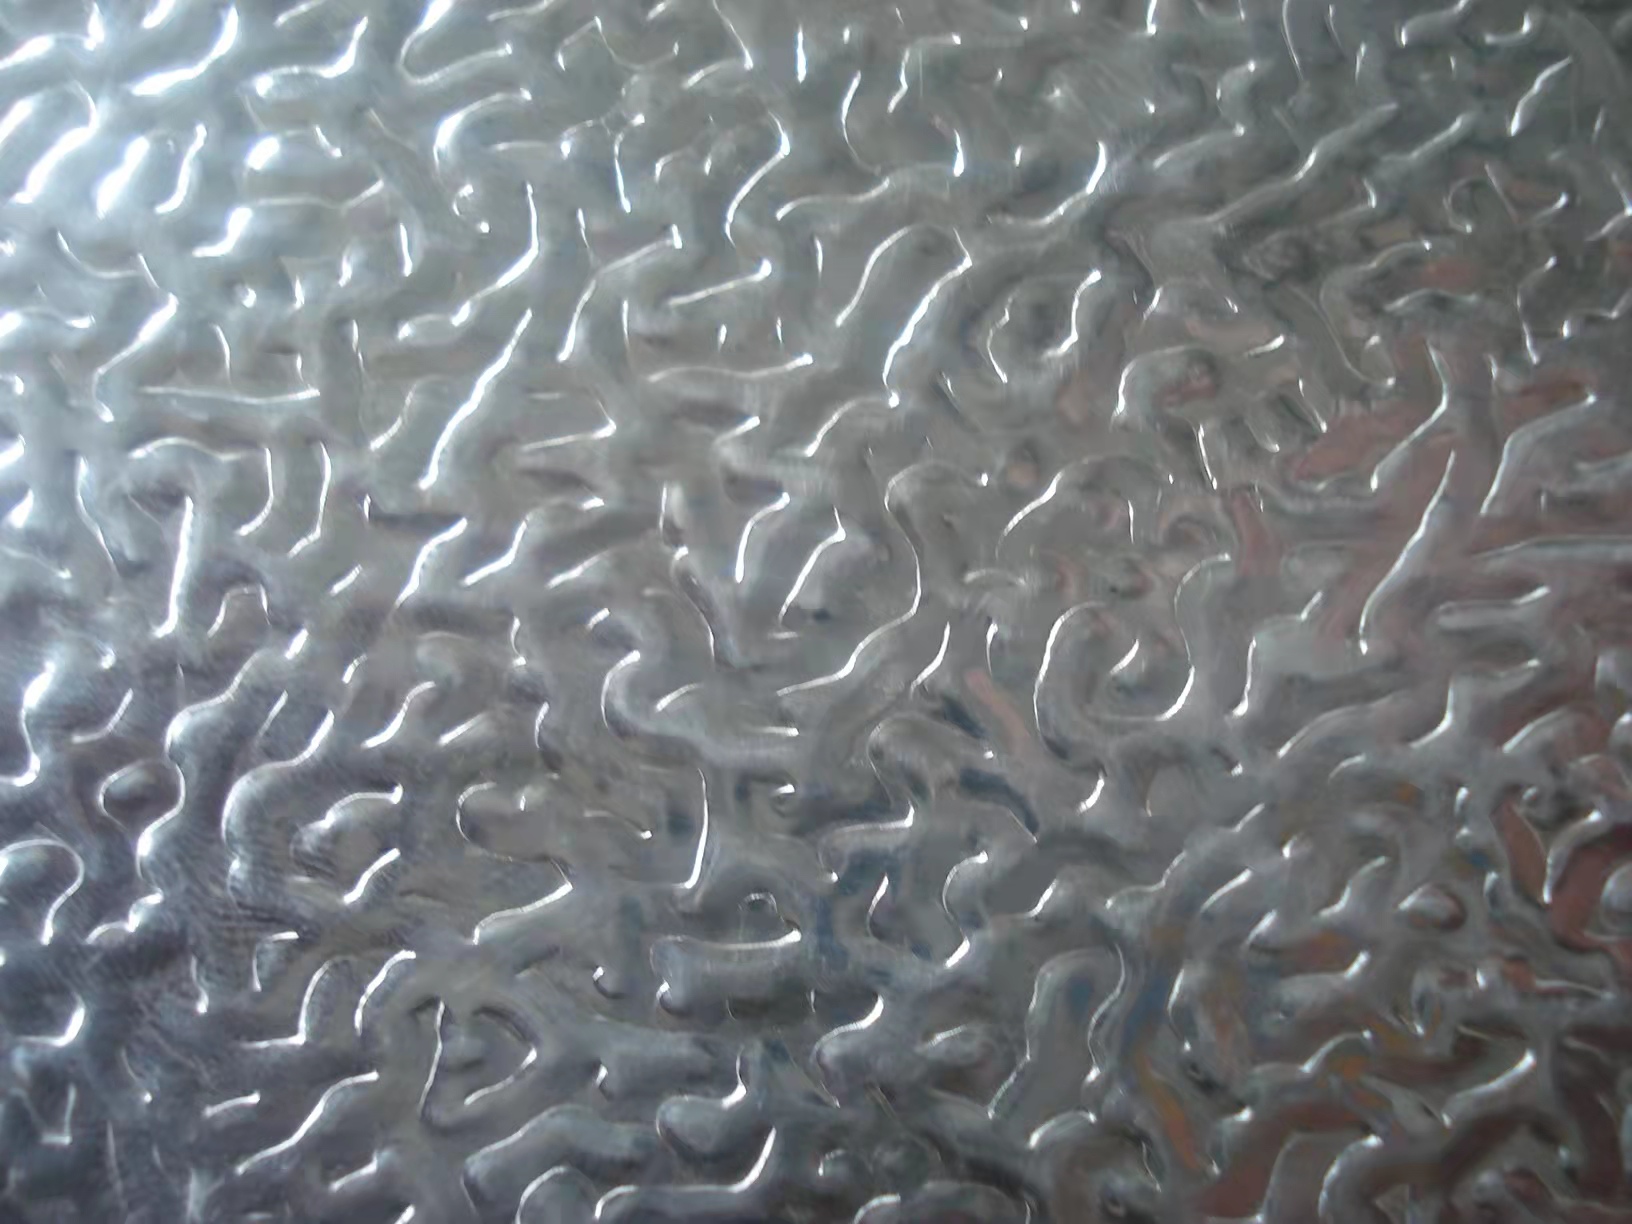 花纹铝板做门厂家 压花铝卷生产厂家